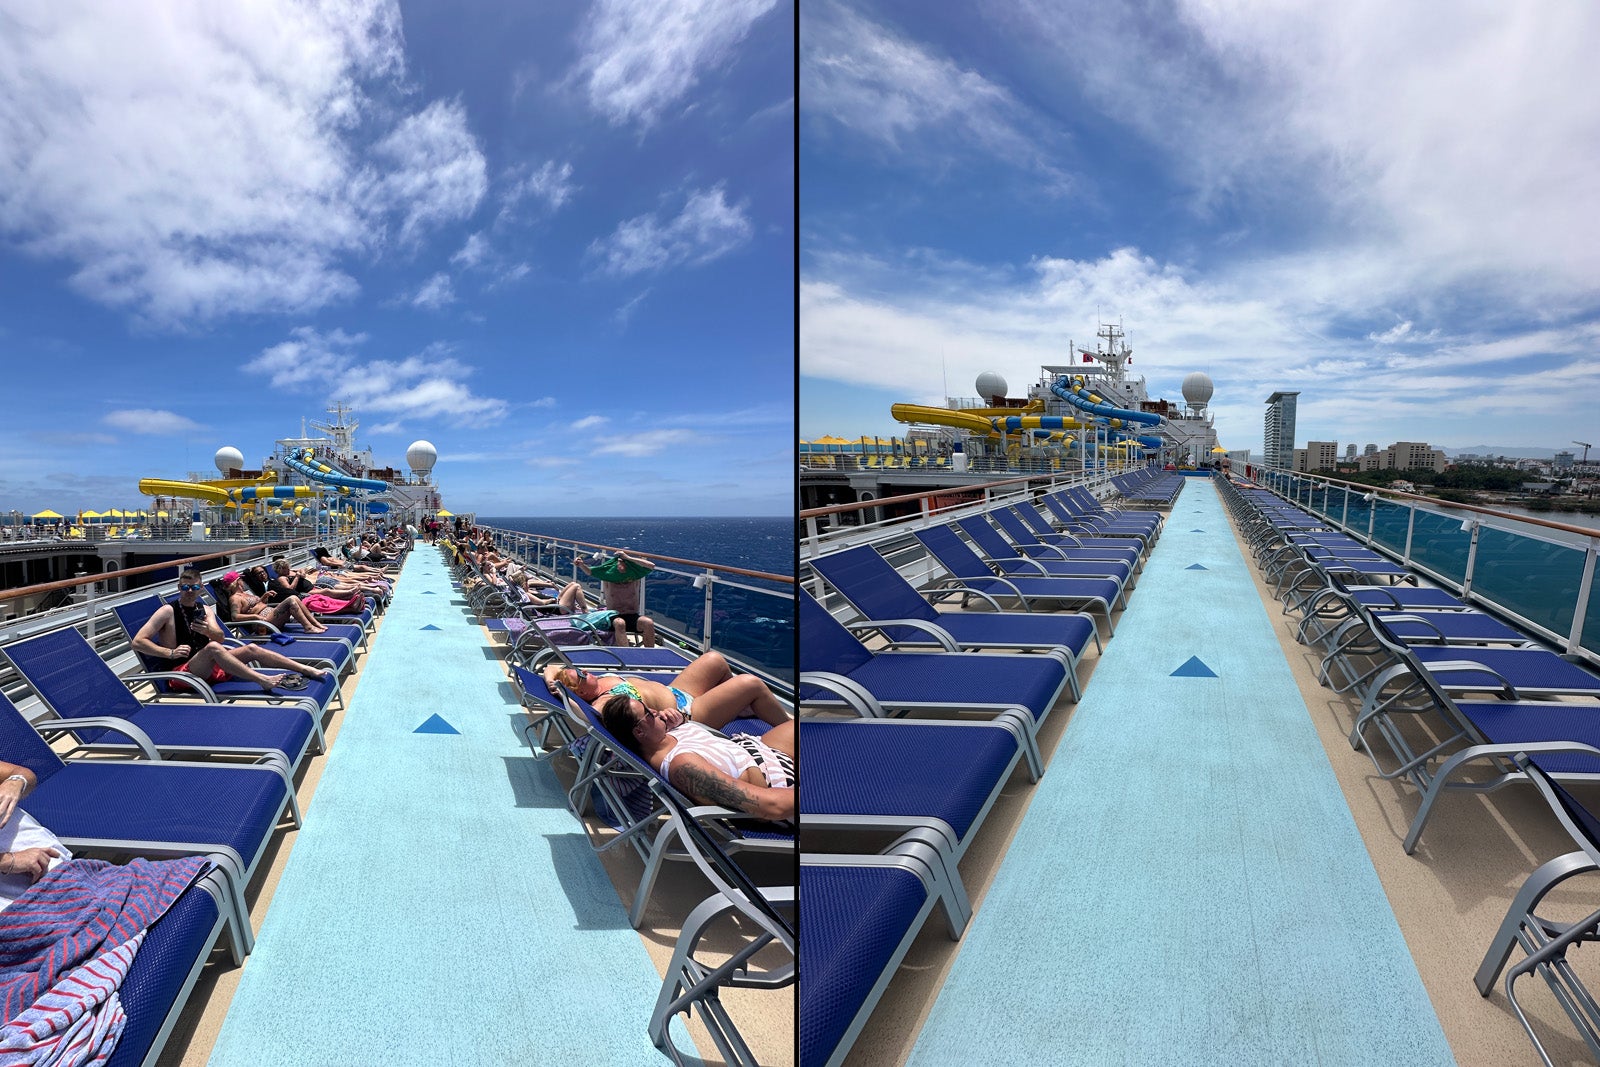 docked cruise ship hotel